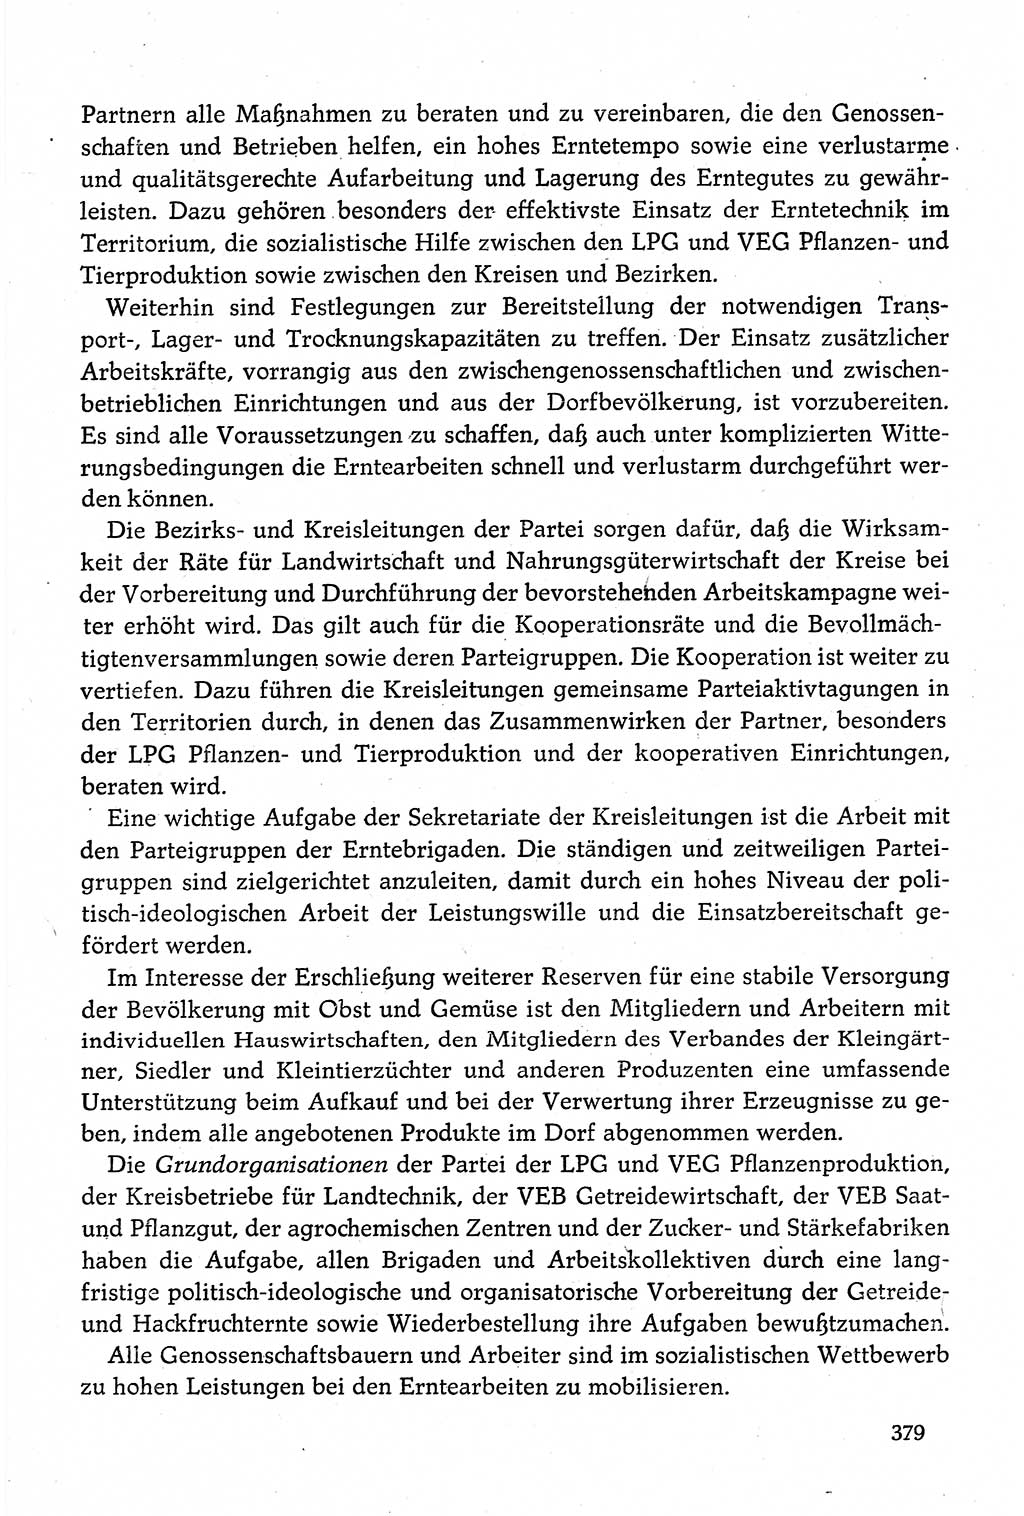 Dokumente der Sozialistischen Einheitspartei Deutschlands (SED) [Deutsche Demokratische Republik (DDR)] 1980-1981, Seite 379 (Dok. SED DDR 1980-1981, S. 379)